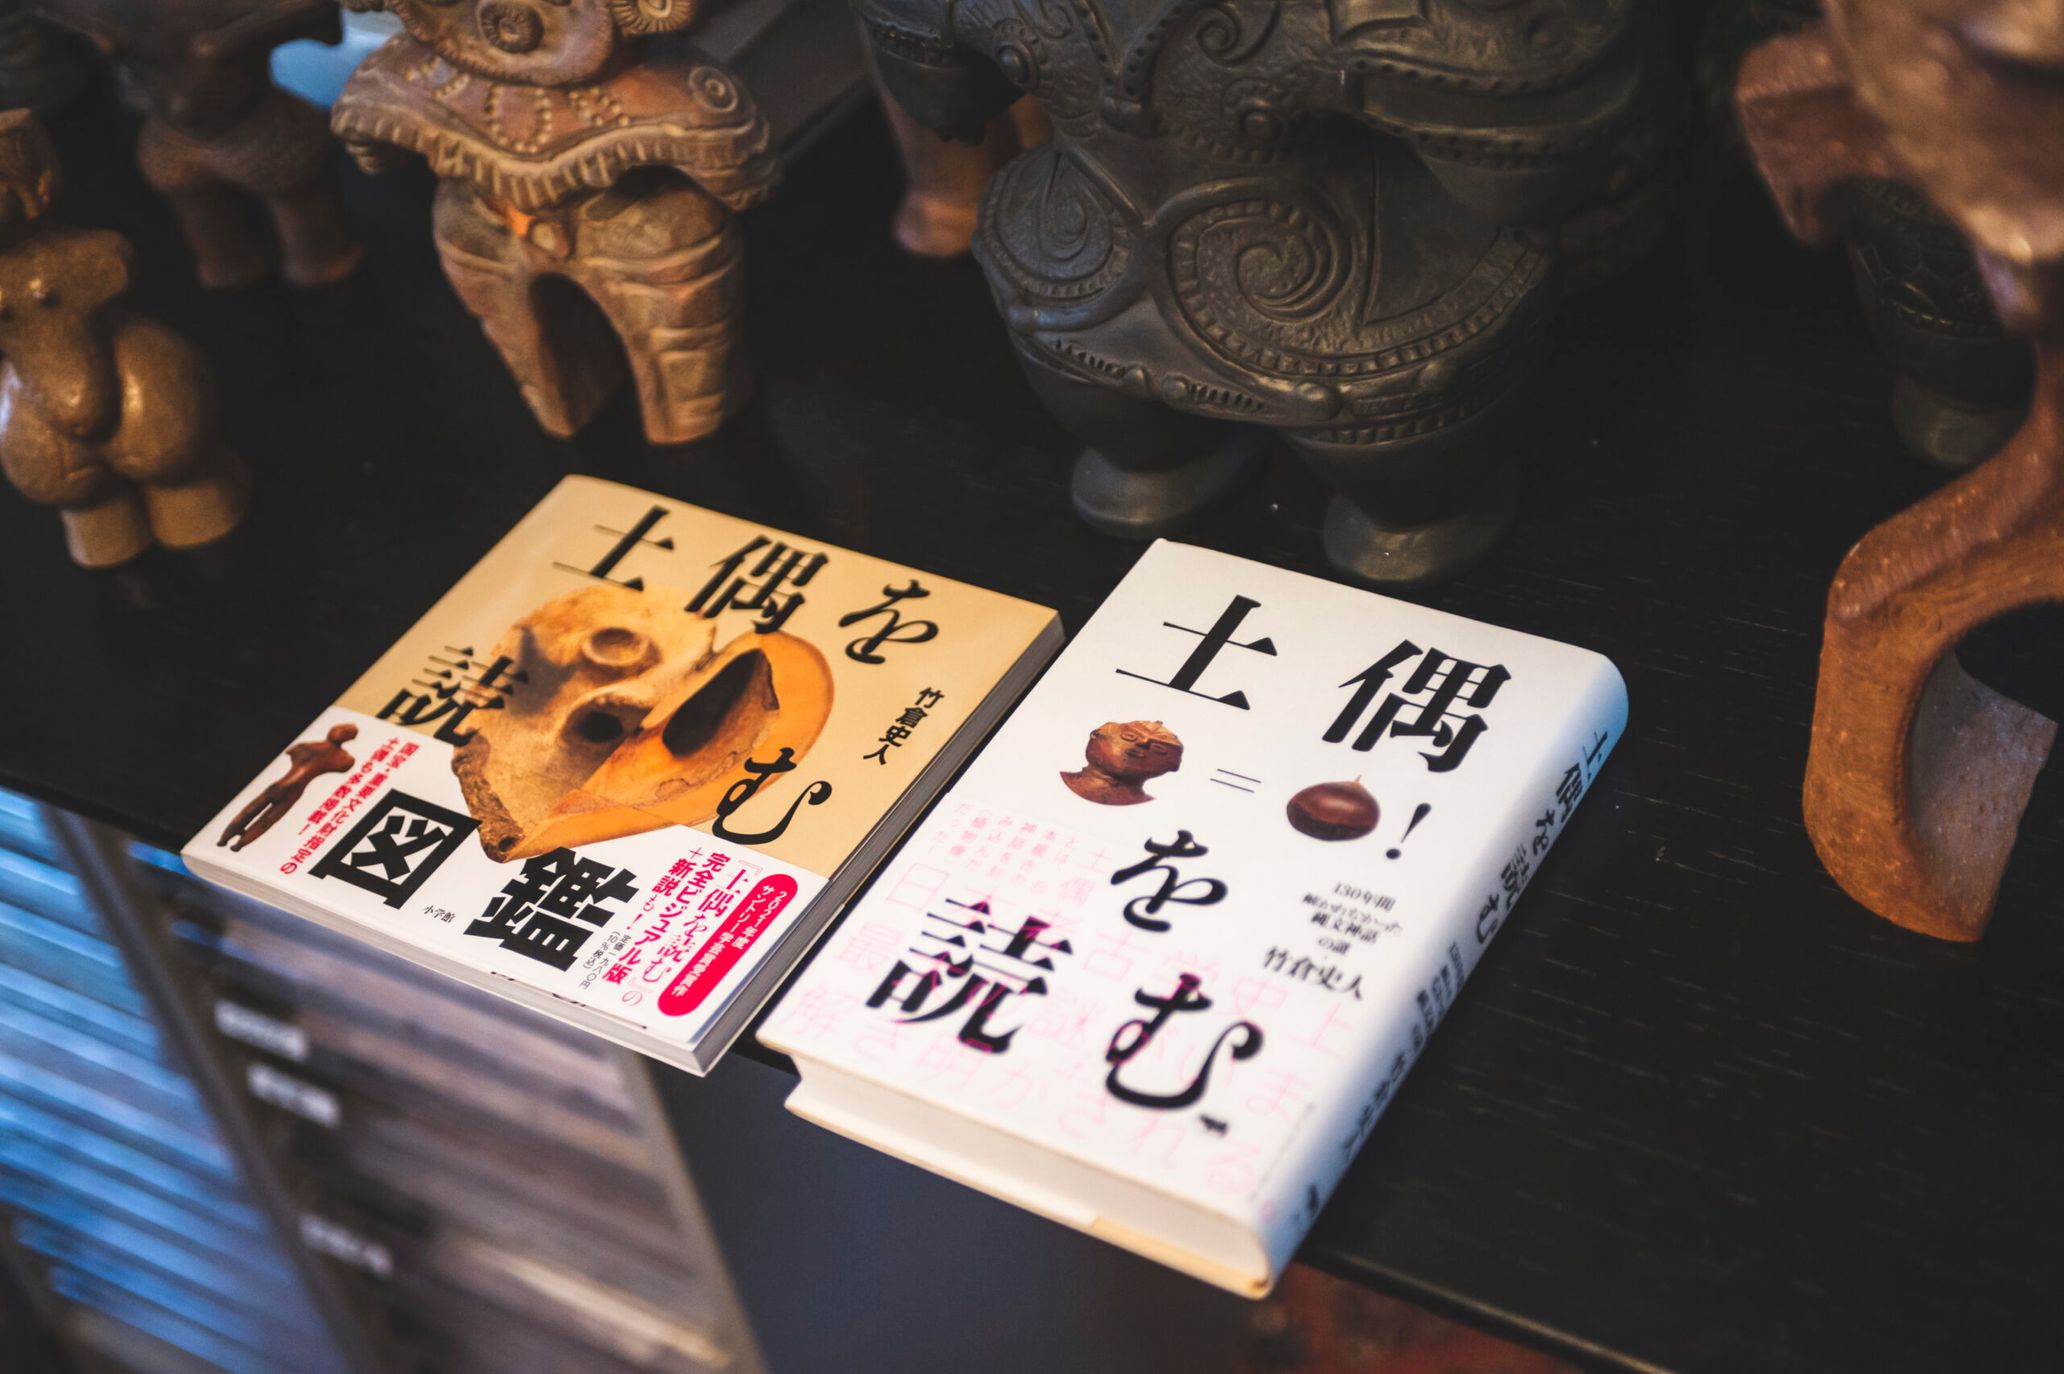 連載「自由人のたしなみ」Vol.9 『土偶を読む』の竹倉史人が考える“縄文”とこれからの知性